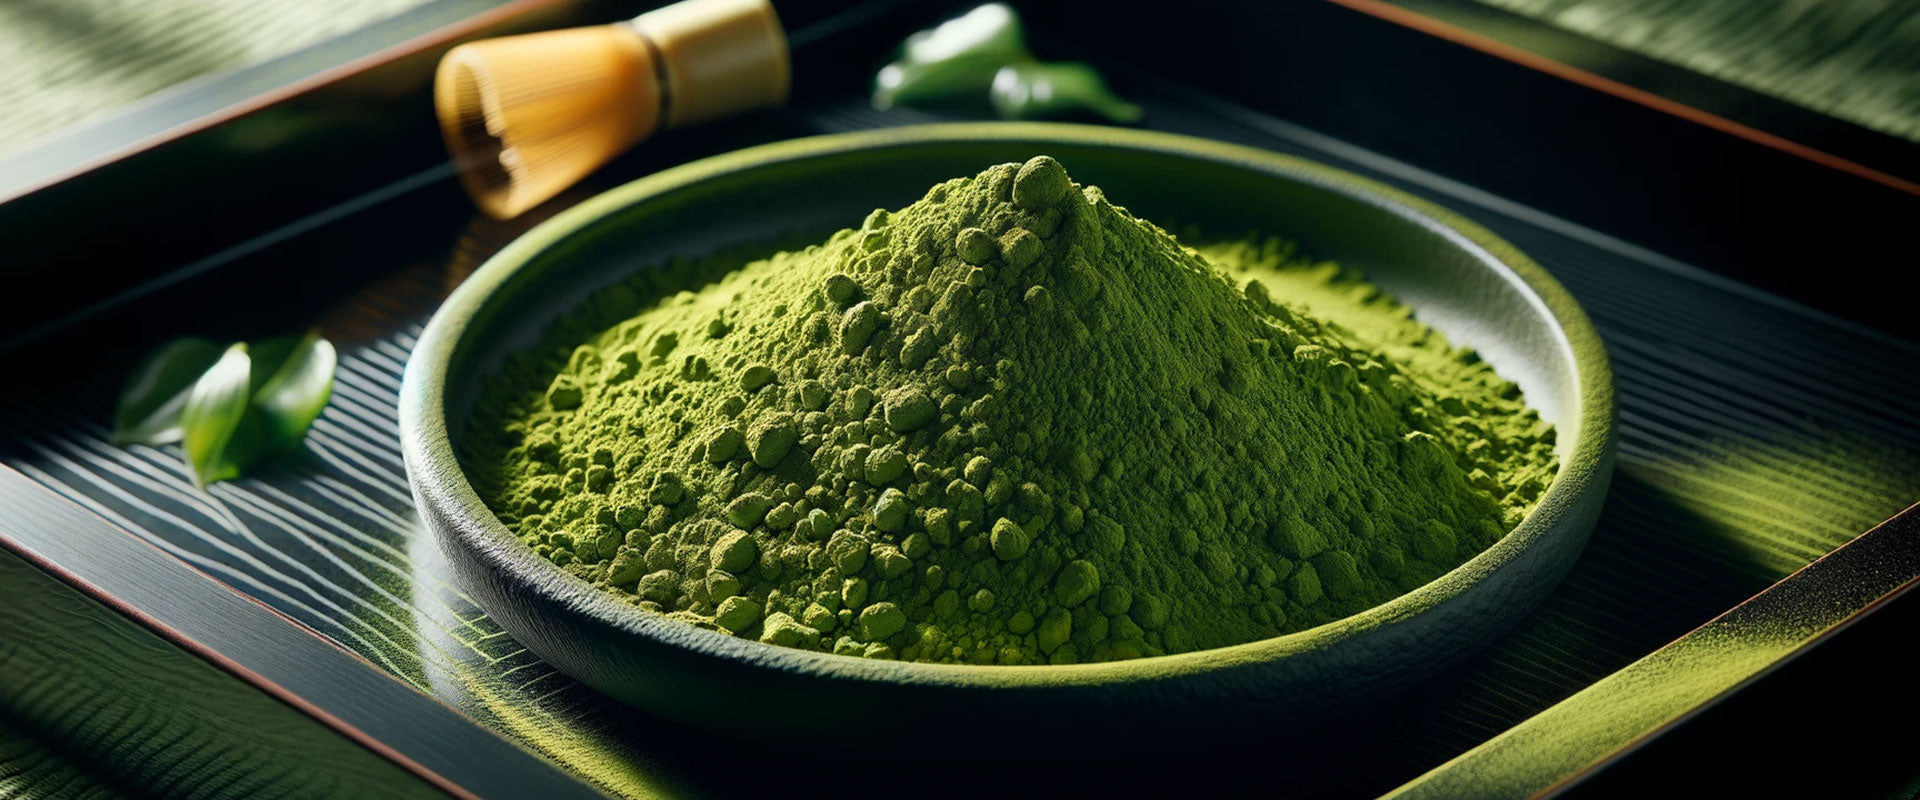 matcha for natural green food coloring